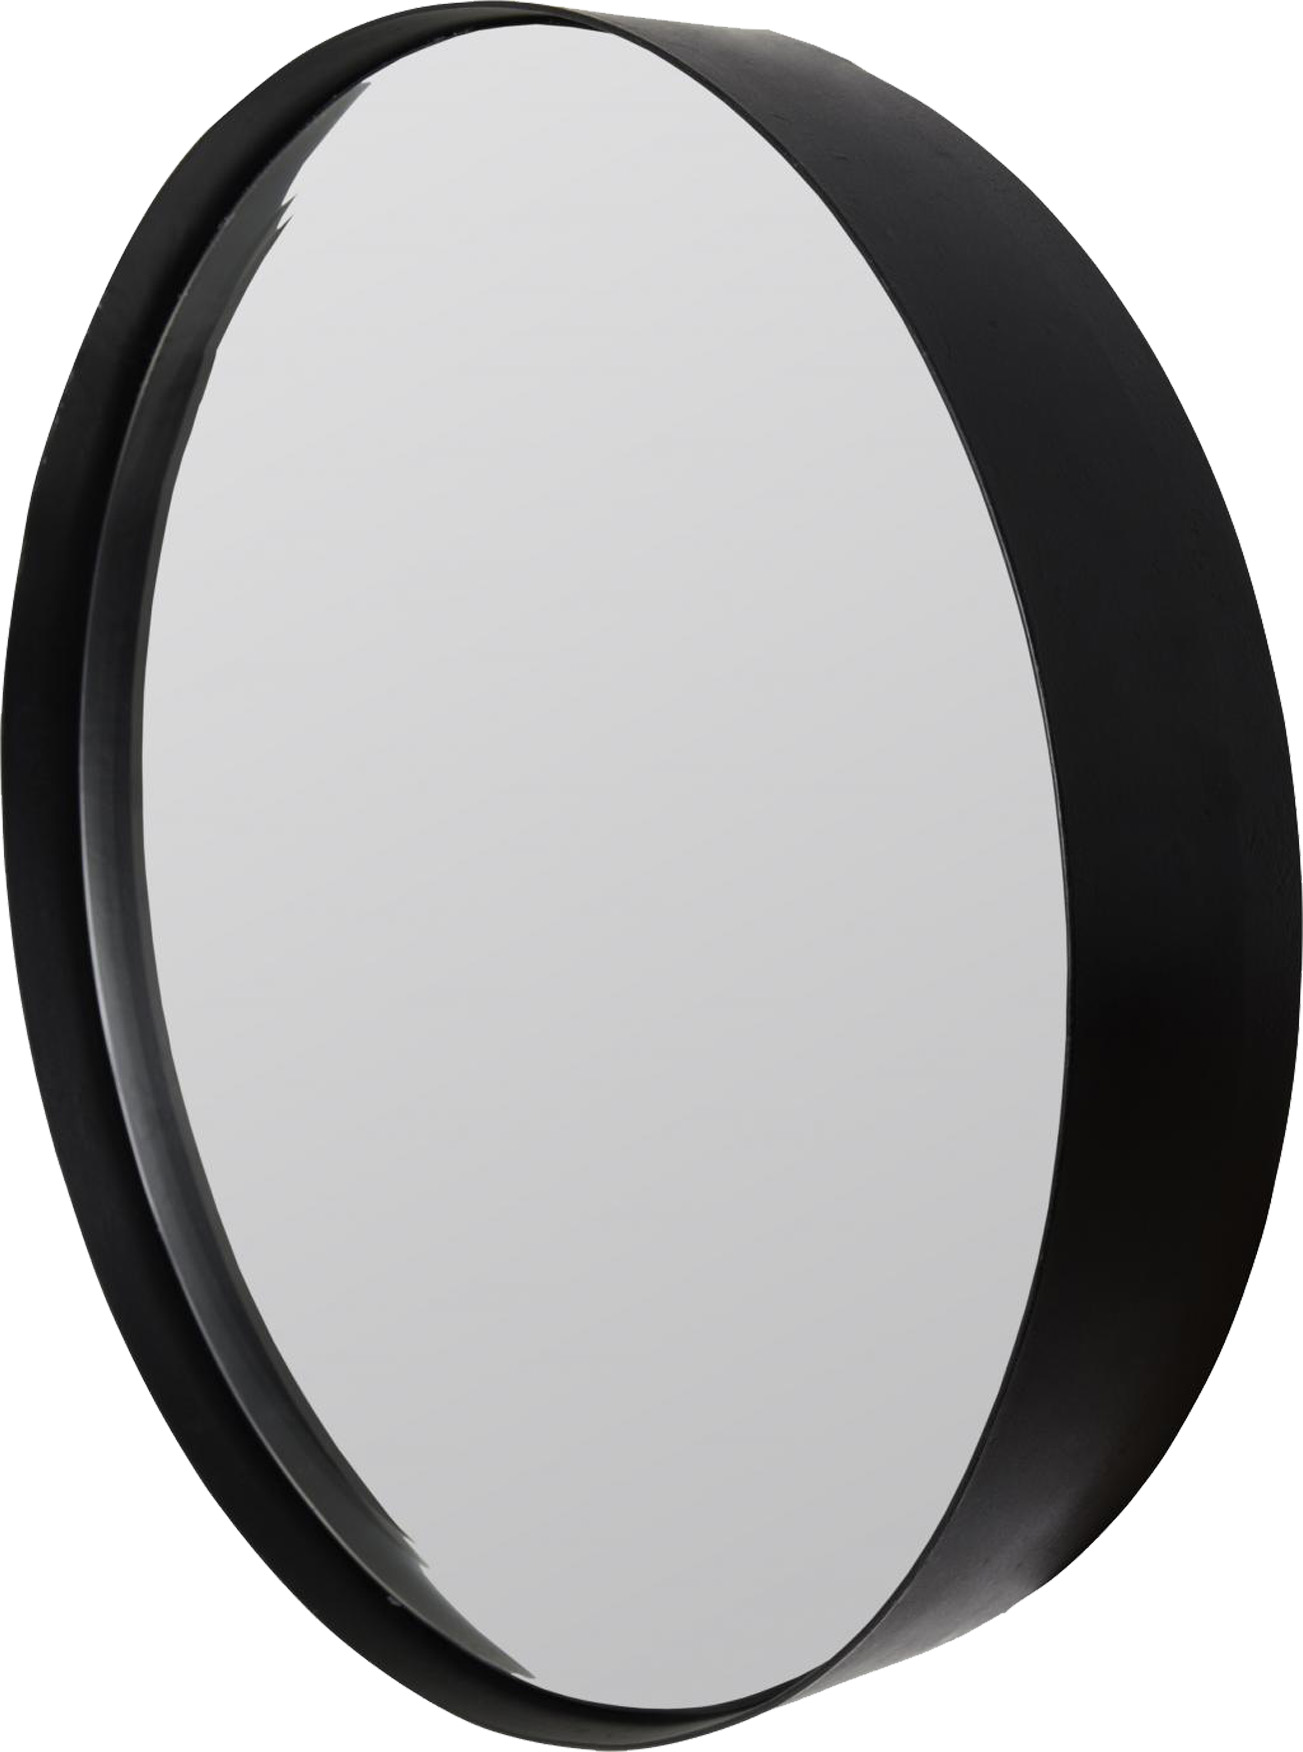 Spiegel ROUND M | Stahl matt schwarz 3 mm | rund ca. 60 cm